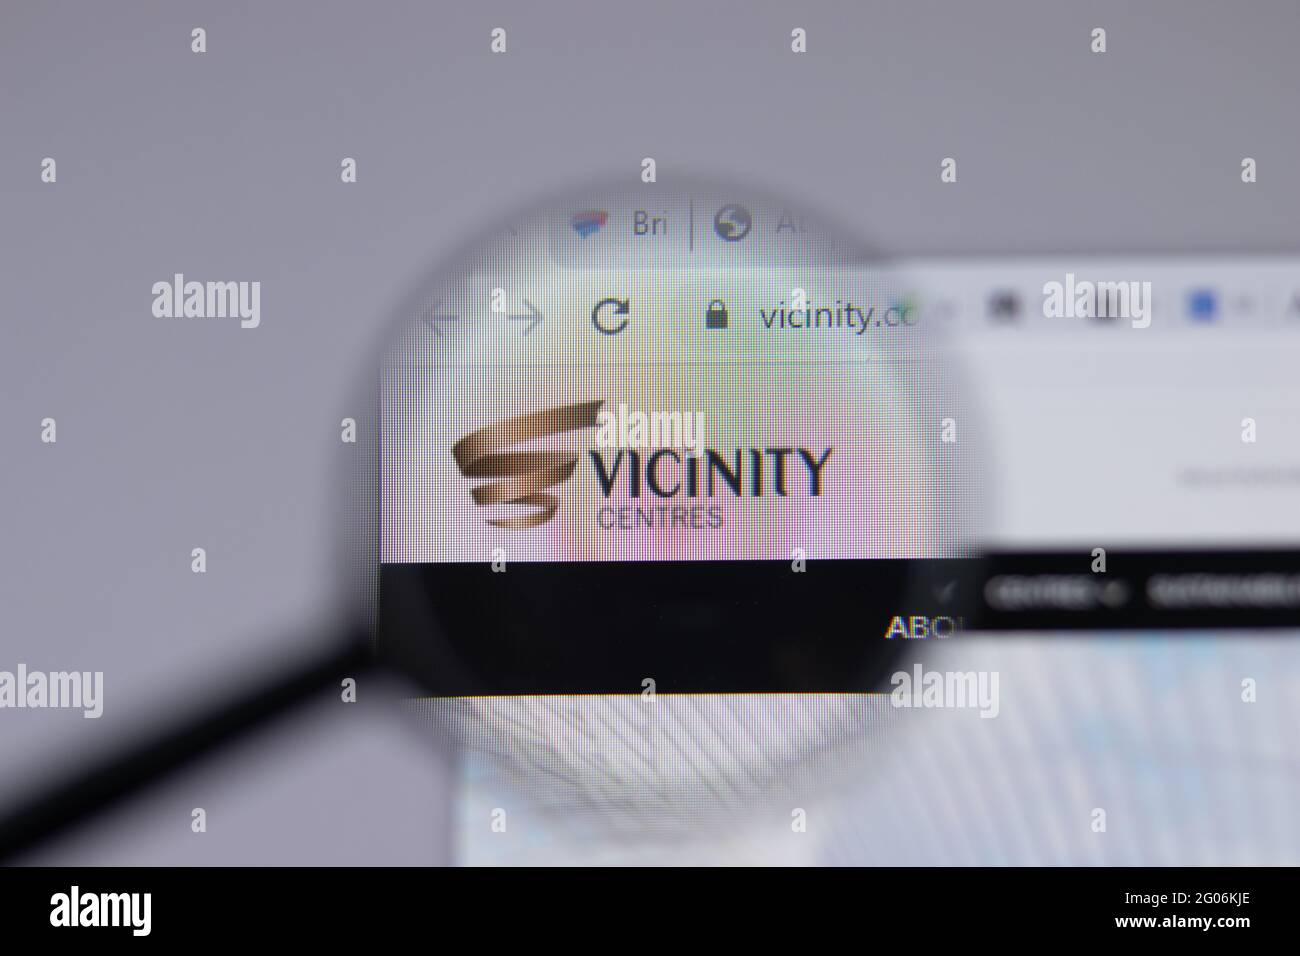 Los Angeles, Kalifornien, USA - 1. Juni 2021: Logo oder Symbol von Vicinity Centers auf der Webseite, illustrative redaktionelle Verwendung Stockfoto